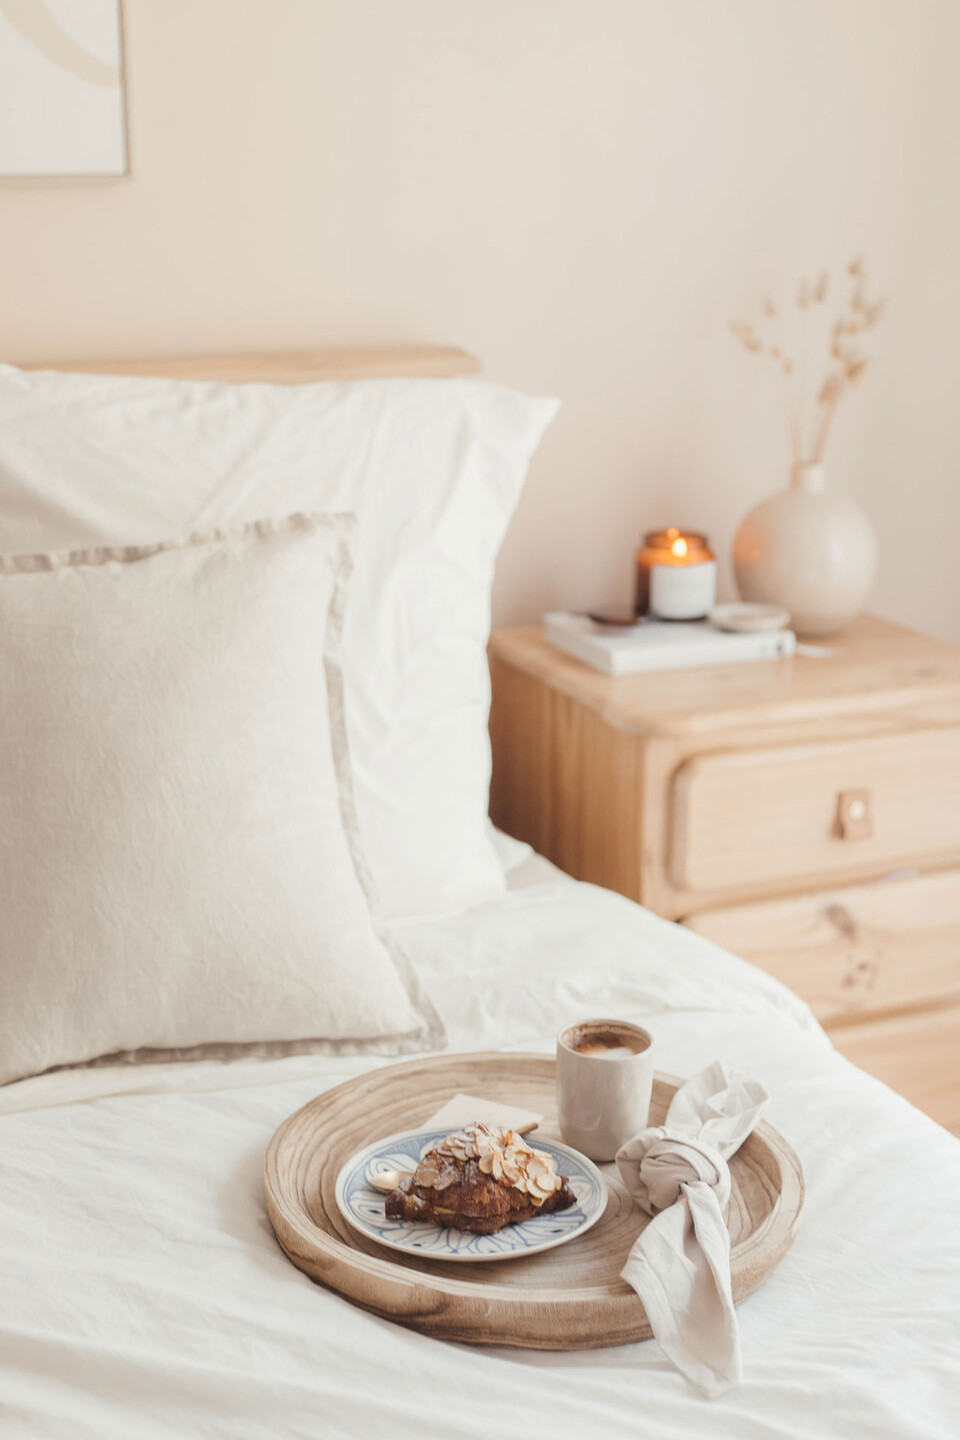 Holztablett mit Frühstück auf einem Bett